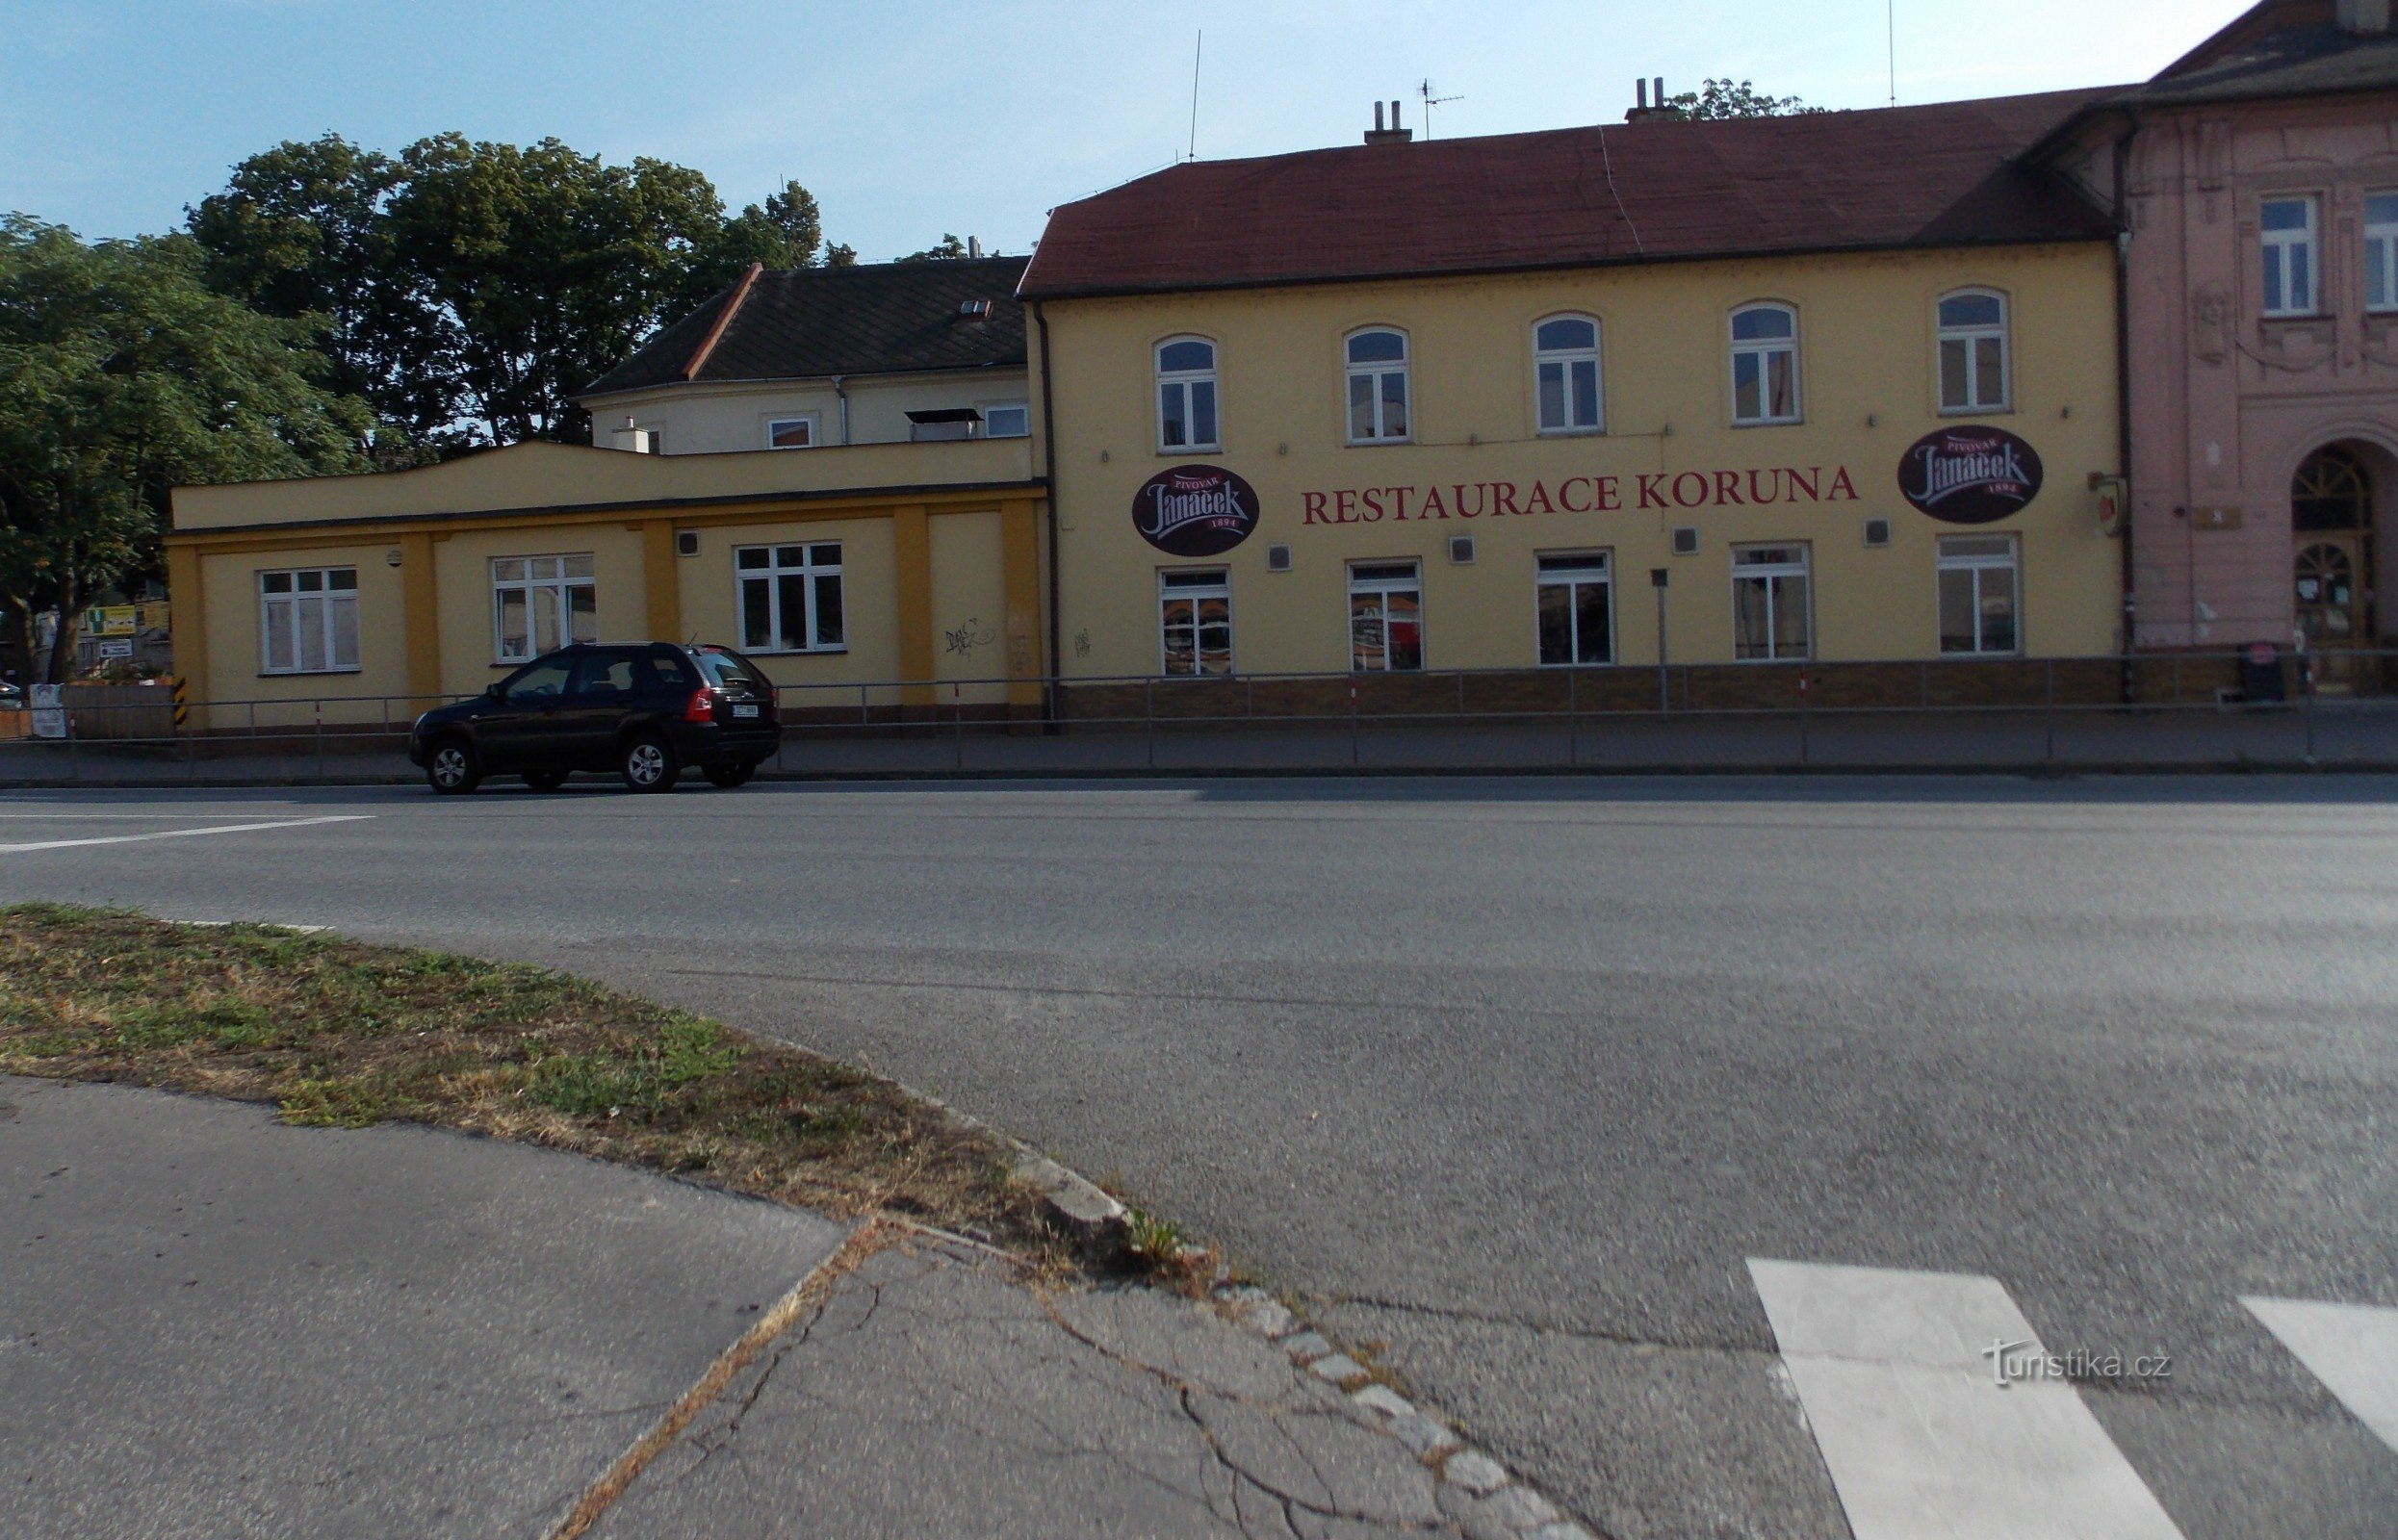 Uherské Hradiště 的 Koruna 餐厅